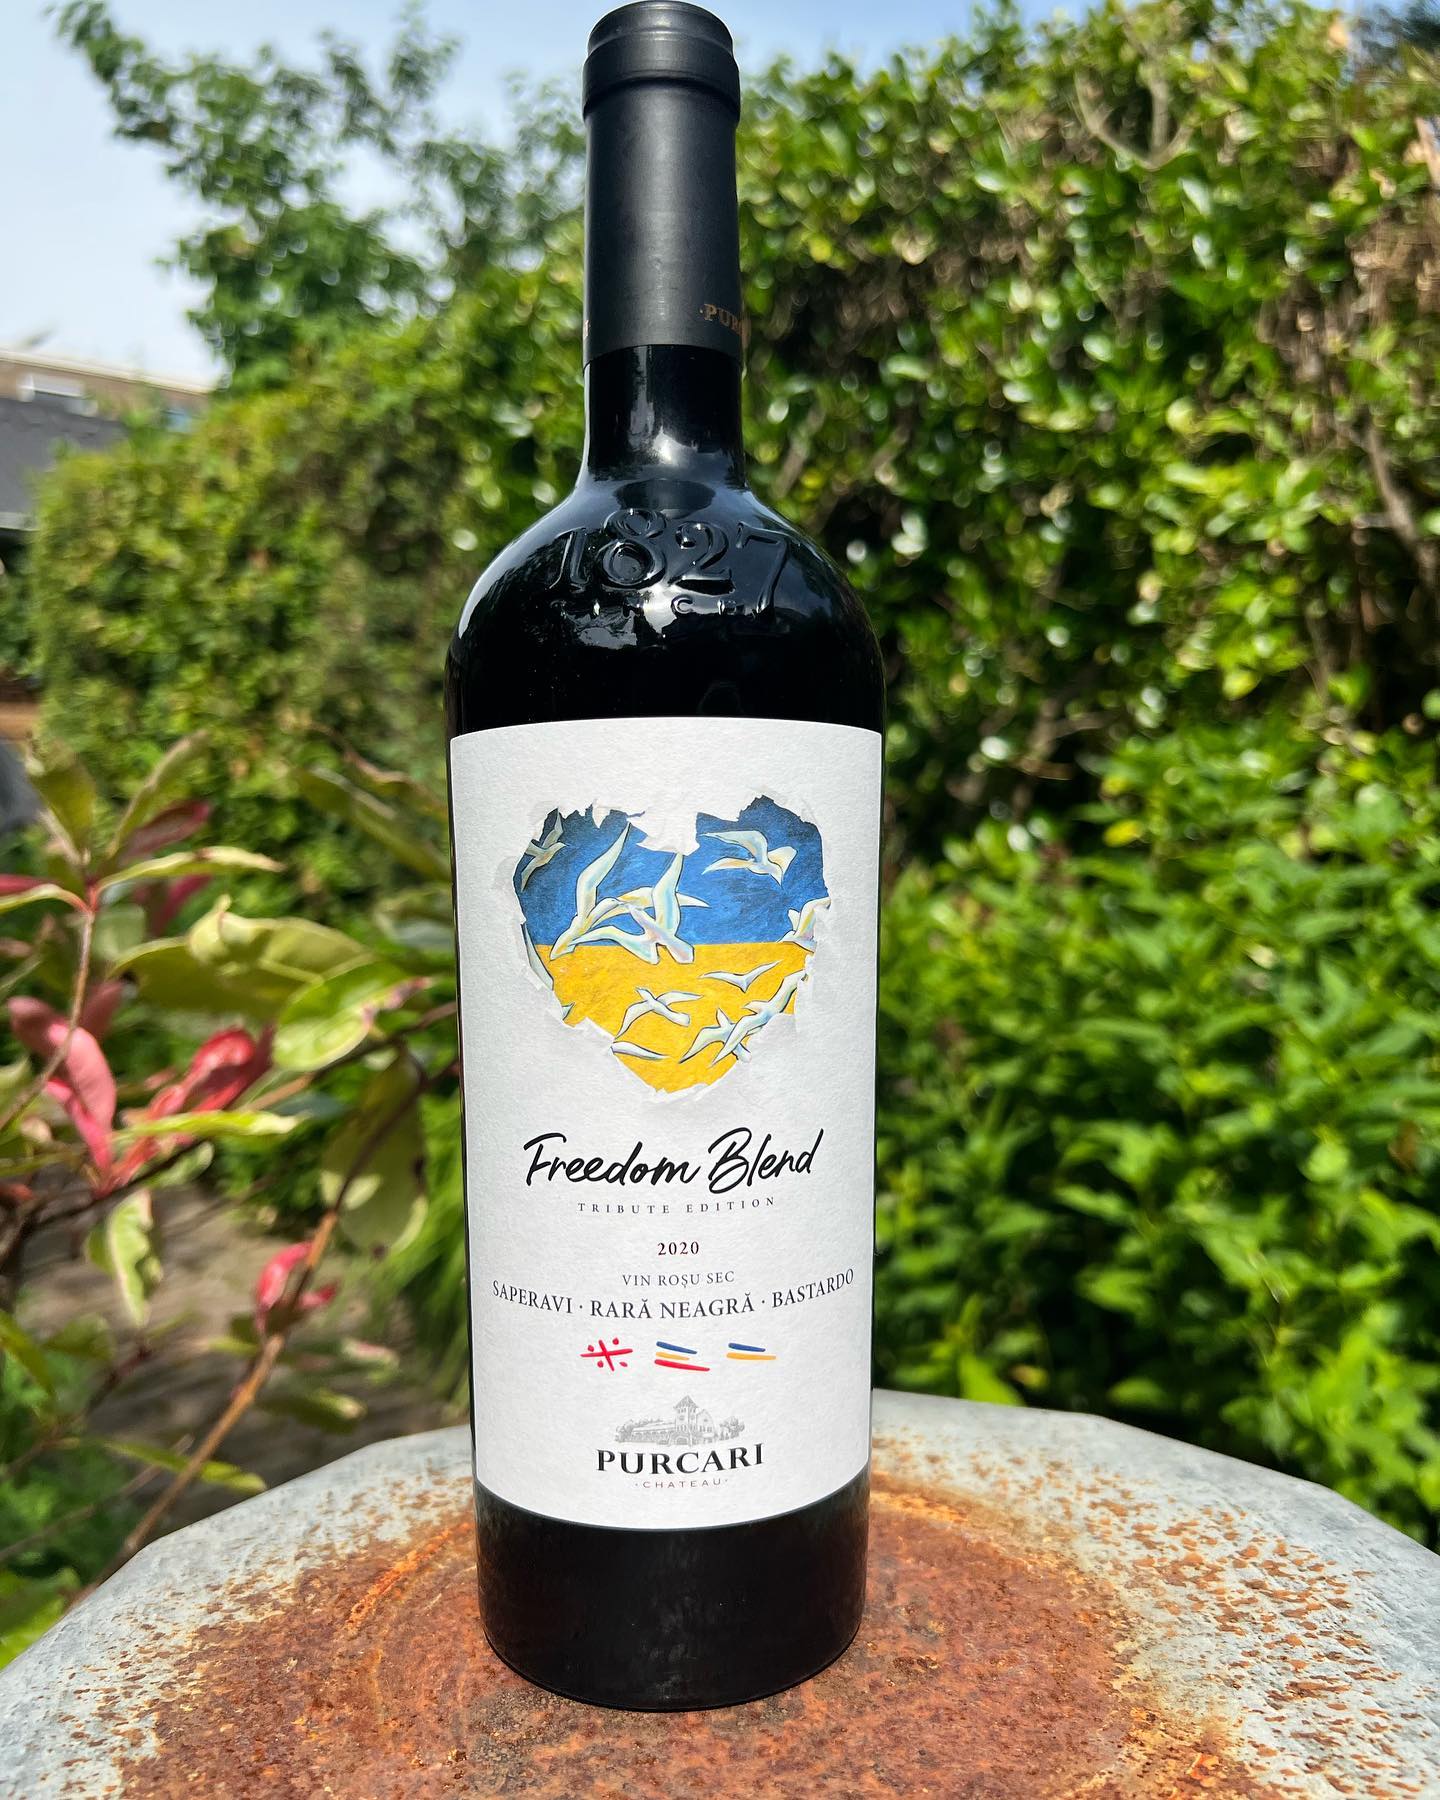 Help Oekraïne via deze fles Freedom Blend! 💰🍇

Wat een mooi initiatief van LFE Wijninkopers. Want met de aankoop van deze wijn steun jij het Chateau. 

Dit wijnhuis Chateau Purcari heeft inmiddels al bijna 12.000 vluchtelingen geholpen in een 24/7 hulpcentrum op het Chateau. 
LFE (Vinify) doneert de winst van 2021 + 2022 van álle Purcari-wijnen aan het Chateau. Hoe mooi is dat! 🙌 

Deze rode wijn is gemaakt van drie druiven: Bastardo (Oekraïne), rarã neagrã (Moldavië) en Saperavi (Georgië). Hij smaakt fluweel zacht en elegant. Mooie frisse zuren, maar ook zwart fruittonen met wat kruidnagel en chocola. Echt iets voor de BBQ! 

En dat BBQ-kookboekje van Vinify kun je ook downloaden. Zie link in mijn bovenstaande bio!

@pitch.pr @vinifywijn @purcari_wines #oekraïne #rodewijn #redwinelover